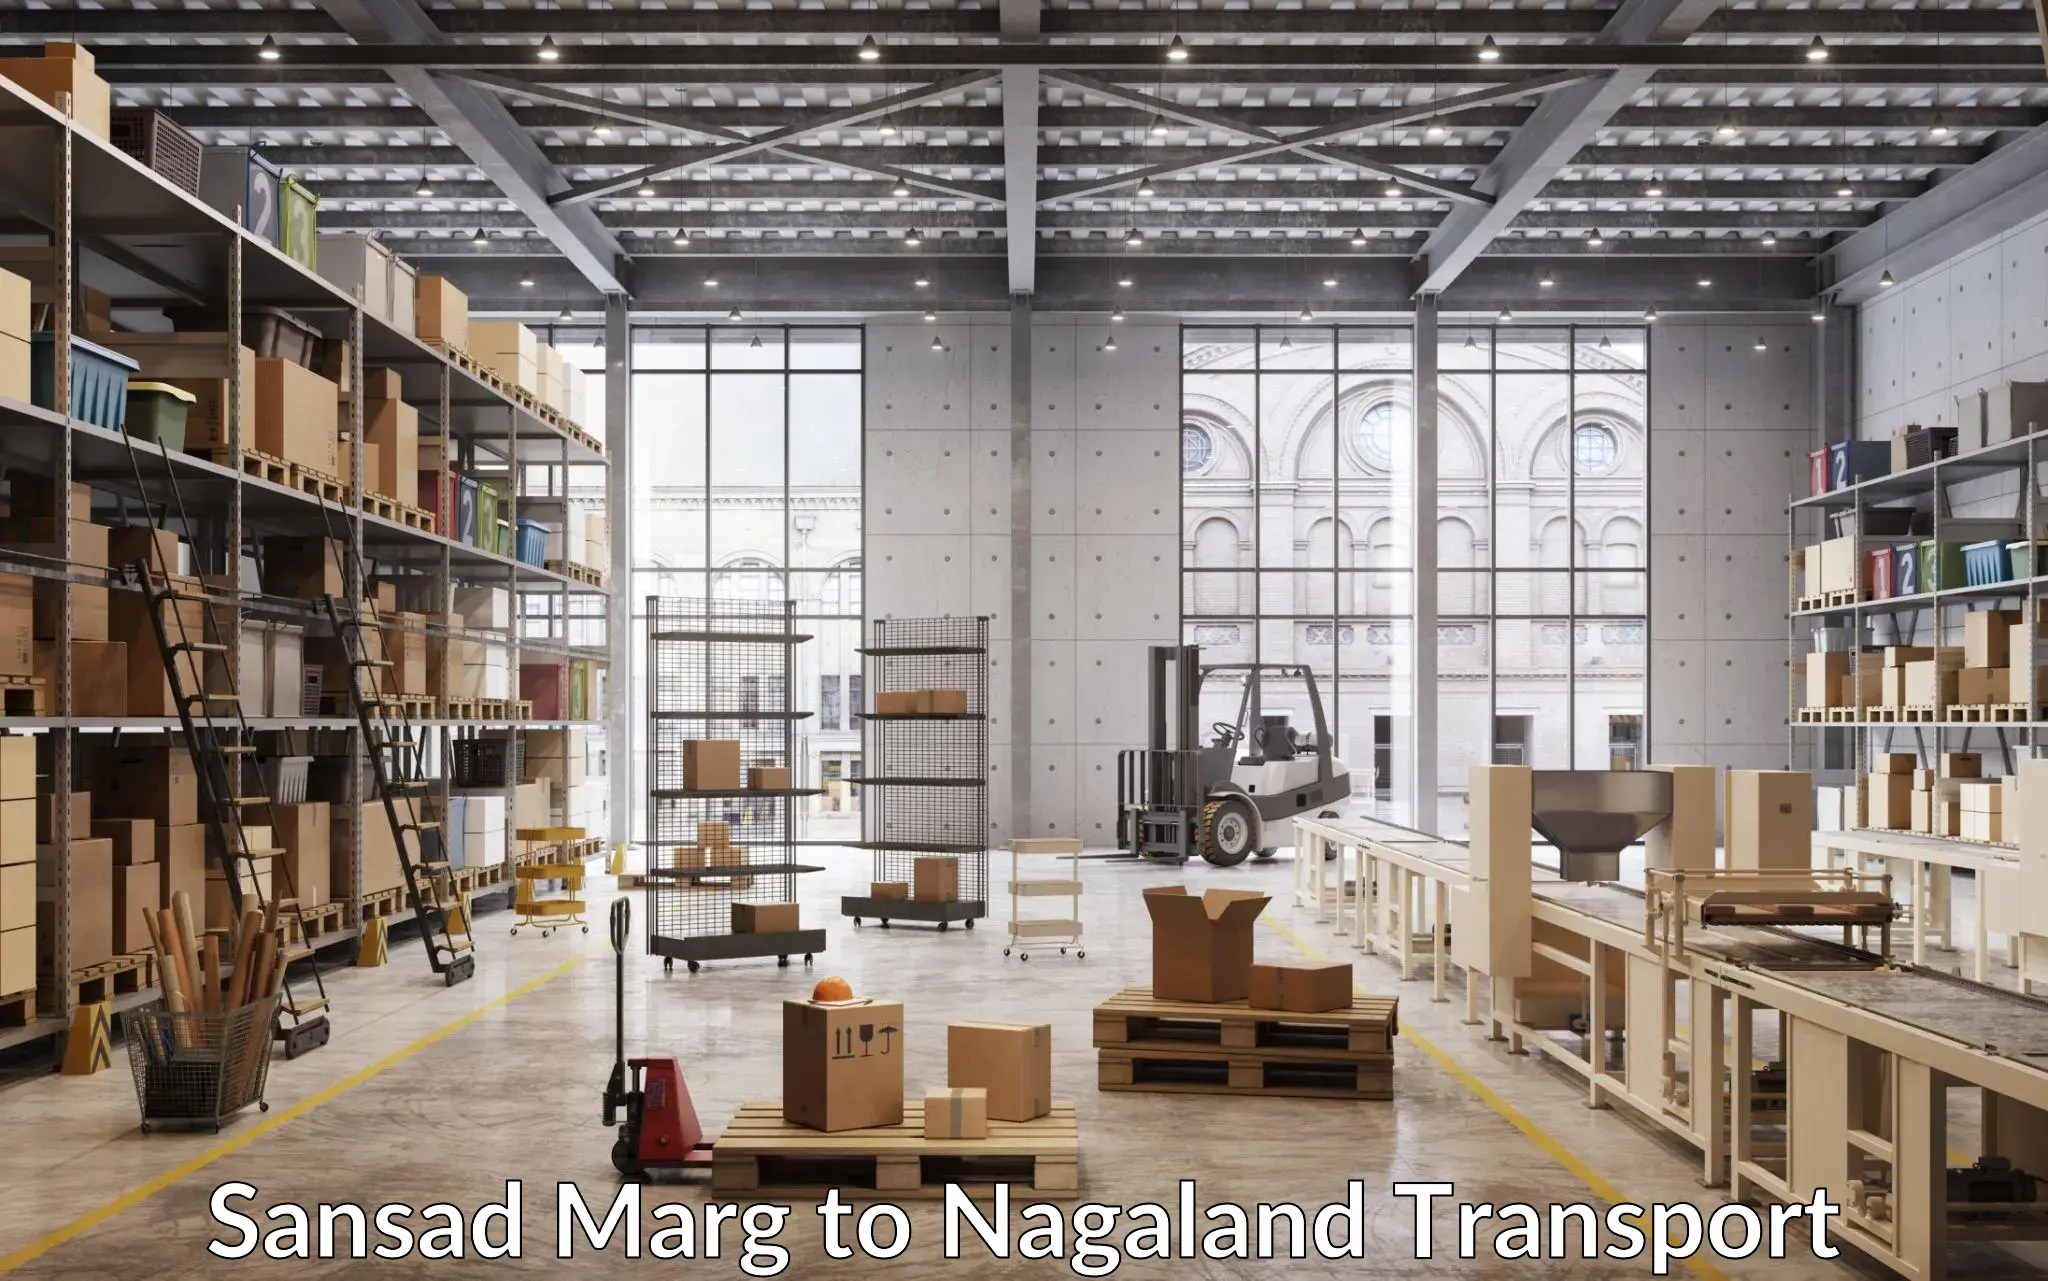 Online transport service Sansad Marg to Nagaland